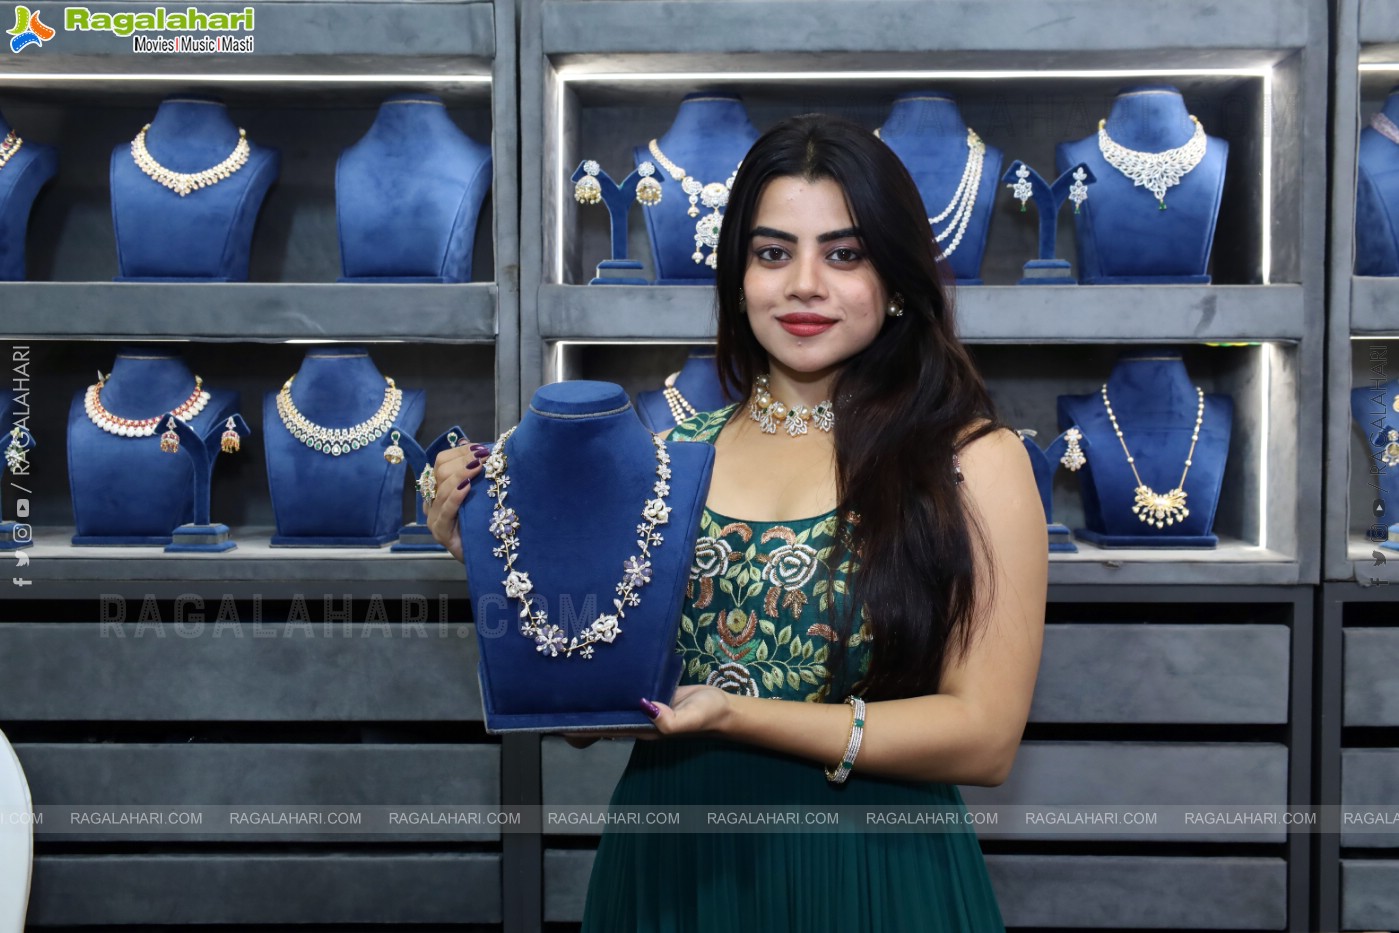 Indian Designer’s Haat Premium Fashion & Lifestyle Exhibition in Hyderabad